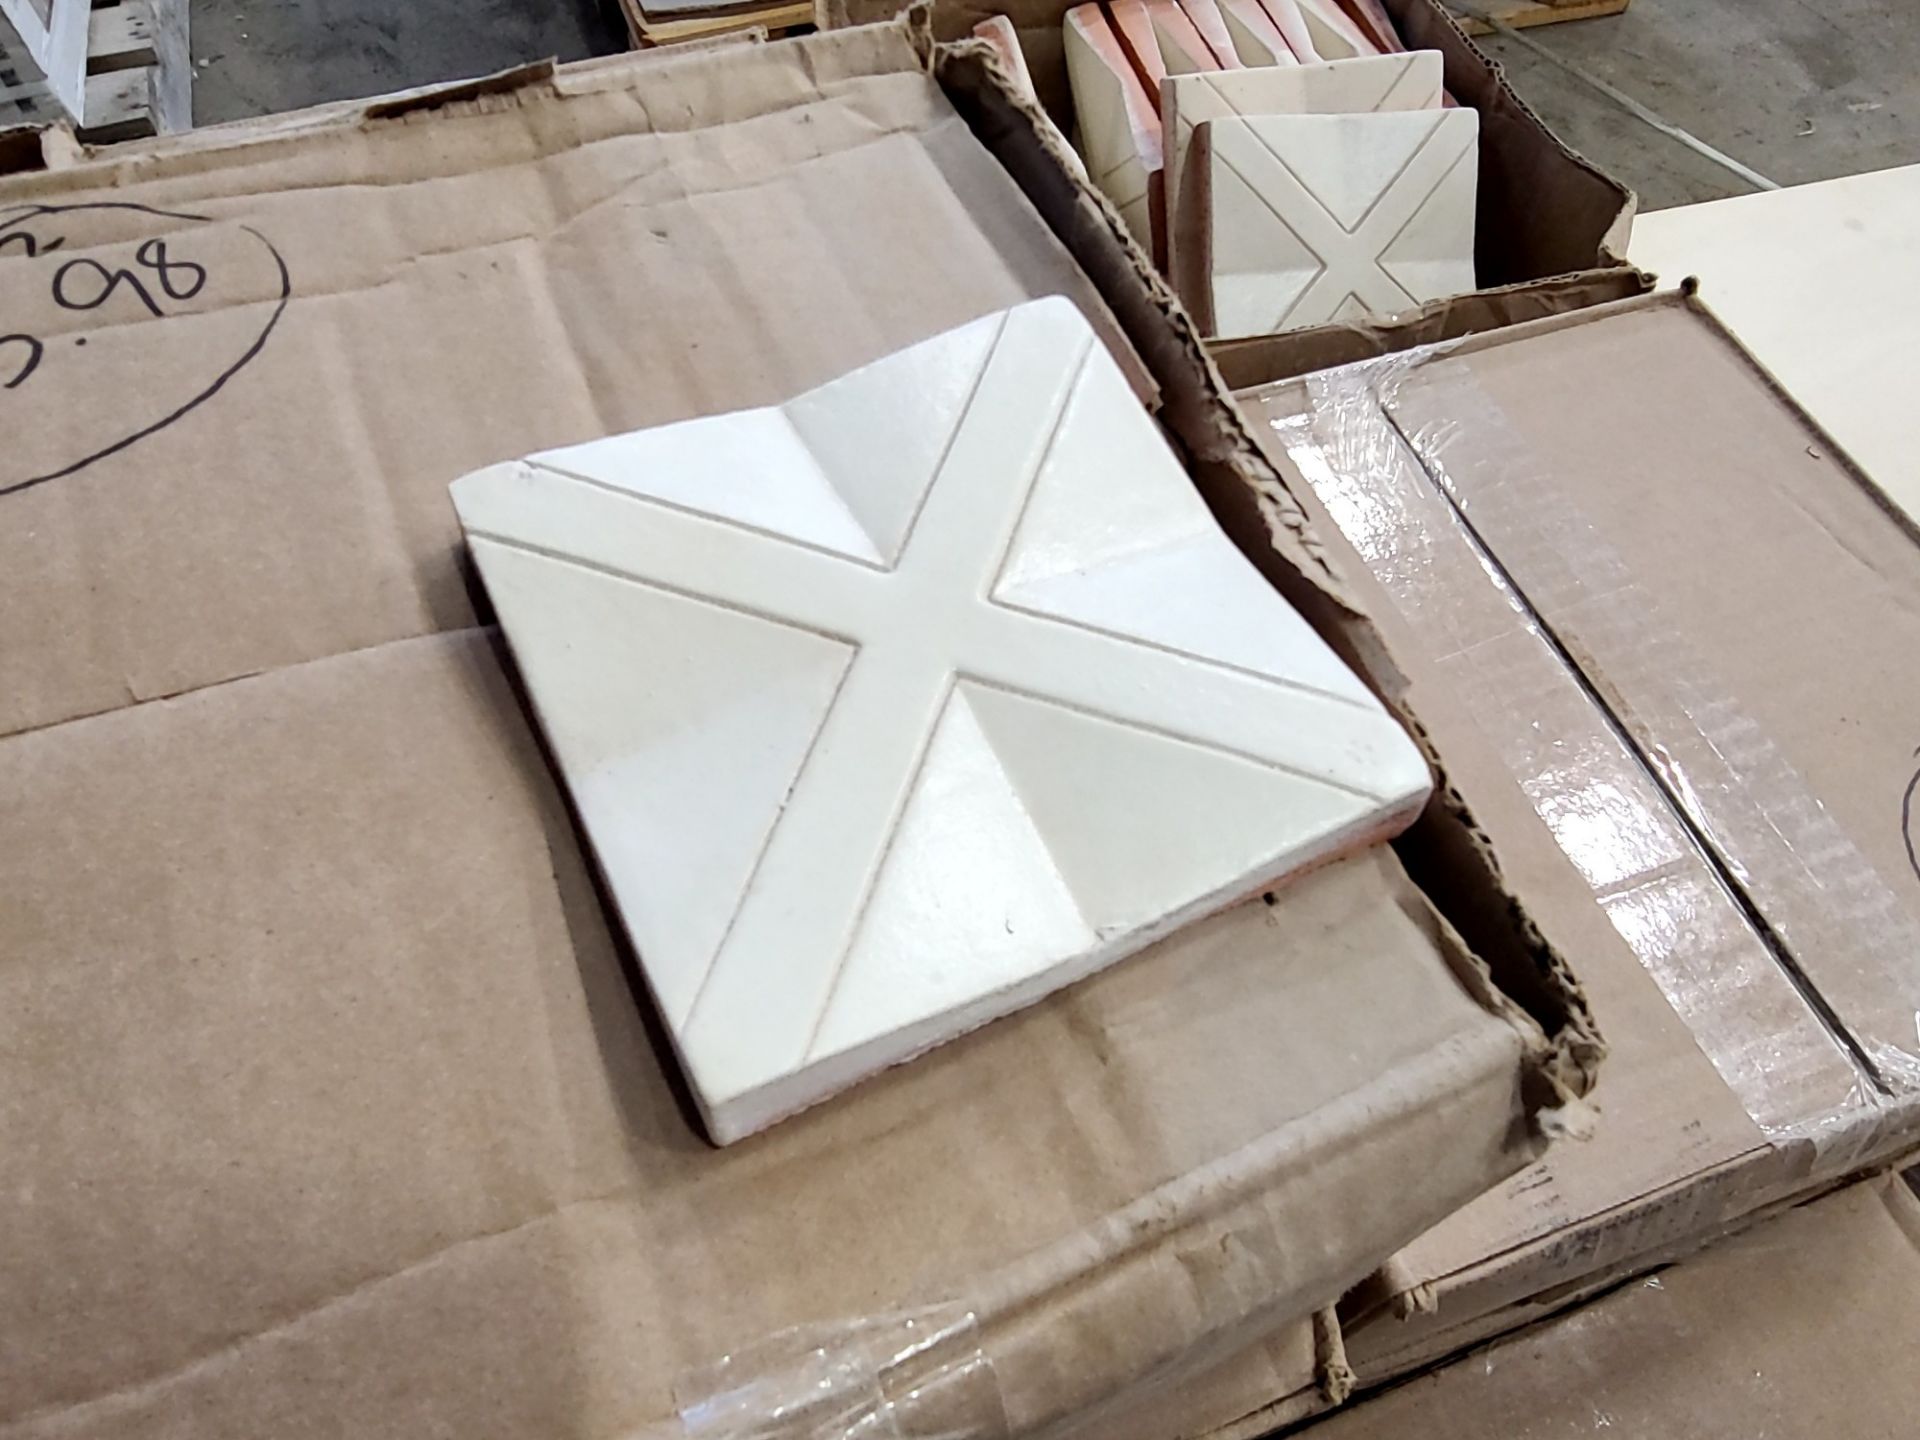 [sq ft] Exquisite Surfaces 4 1/2" x 4 1/2" Tile Squares